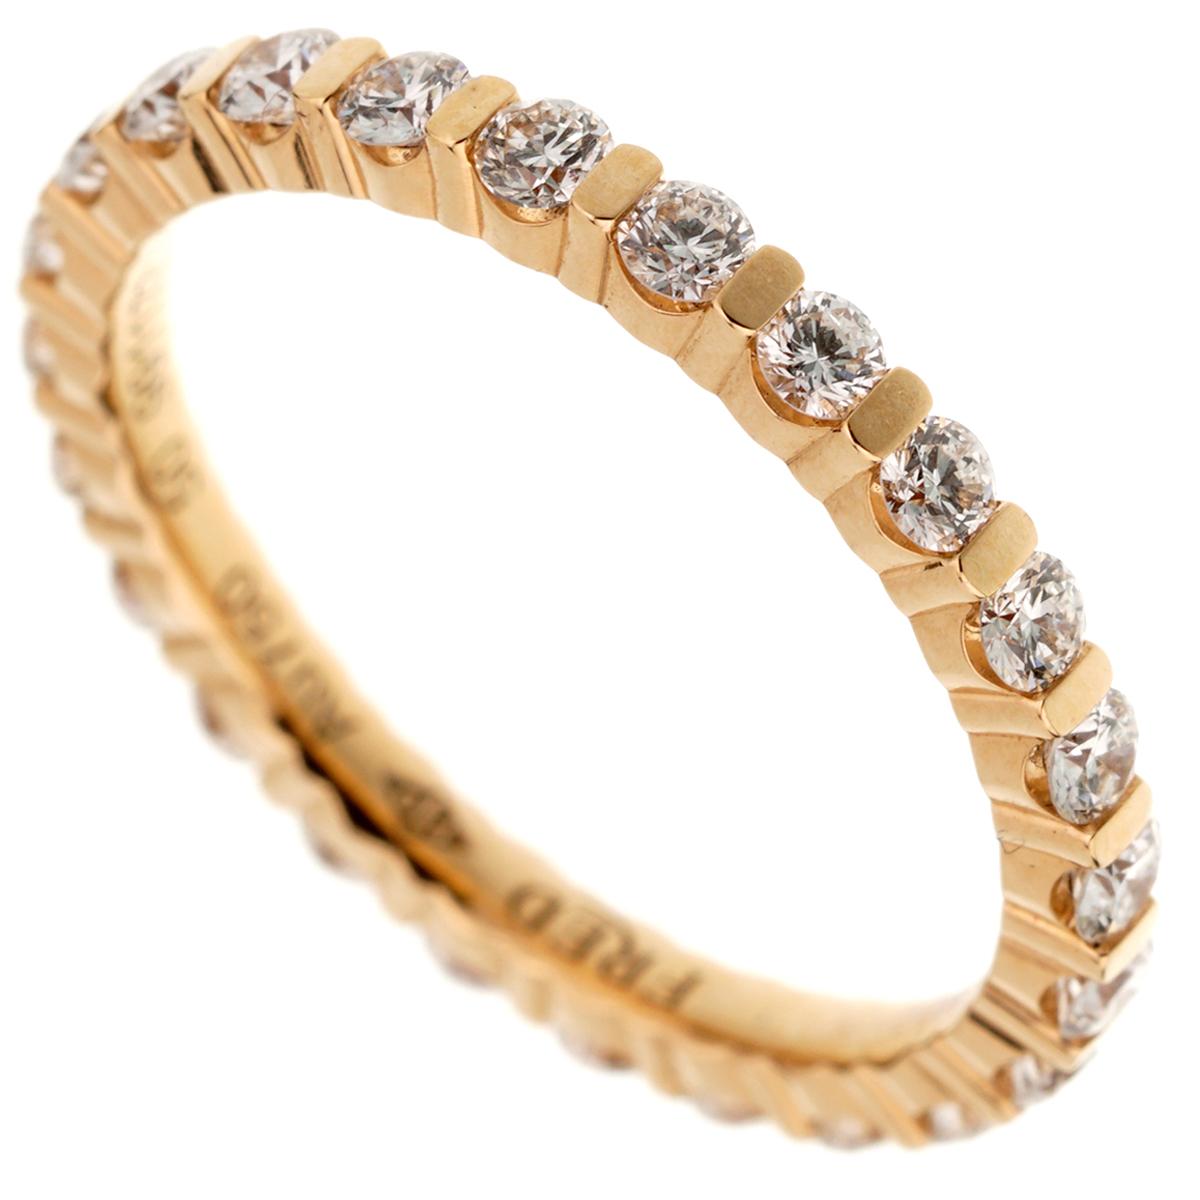 Une superbe bague éternelle en diamant Fred of Paris mettant en valeur les plus beaux diamants ronds de taille brillant sertis en or rose. La bague mesure une taille 5.